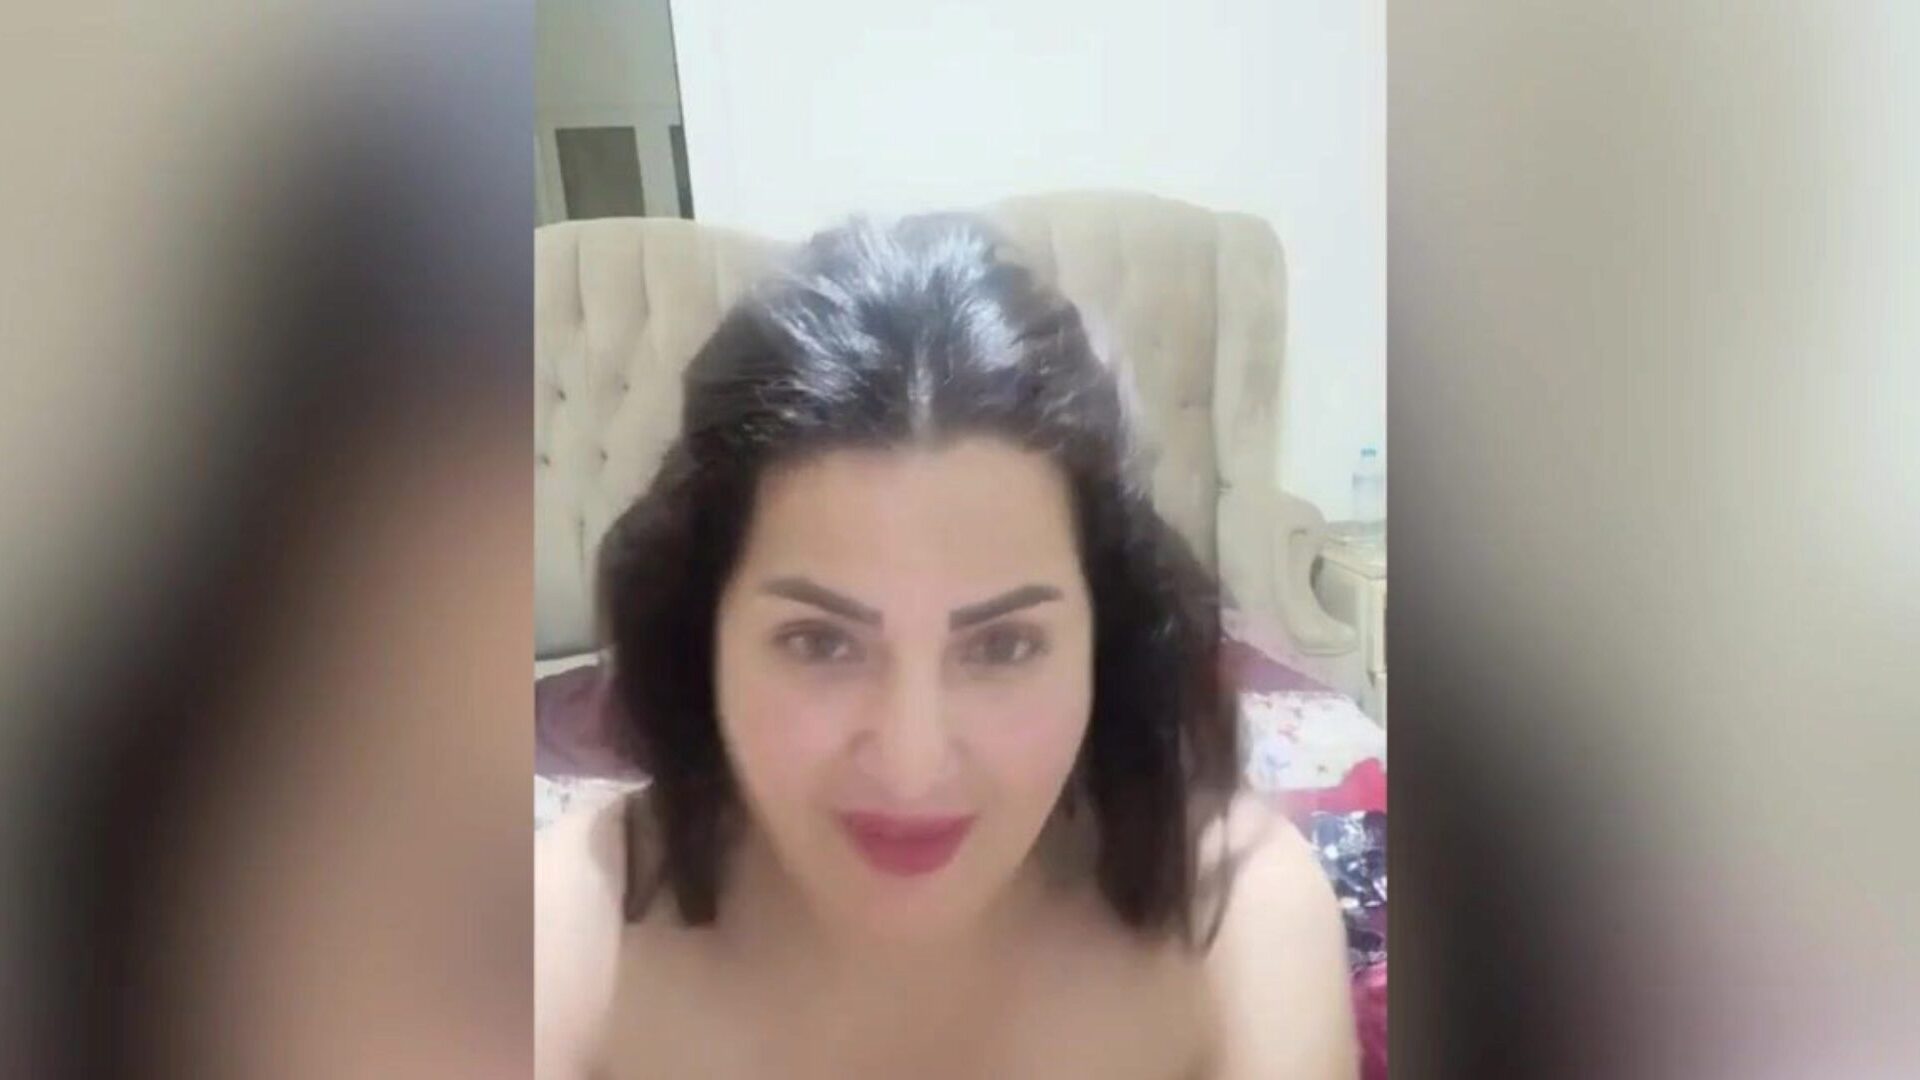 阿拉伯埃及女演员fuck-a-thon萨玛·马斯里·马斯里·热·马斯里亚·纳尔埃及阿拉伯狂欢由萨马·马斯里·萨马斯·马斯里，她是hawt asaaa，展示了她的大火箭筒和hawt大gazoo masrya naar